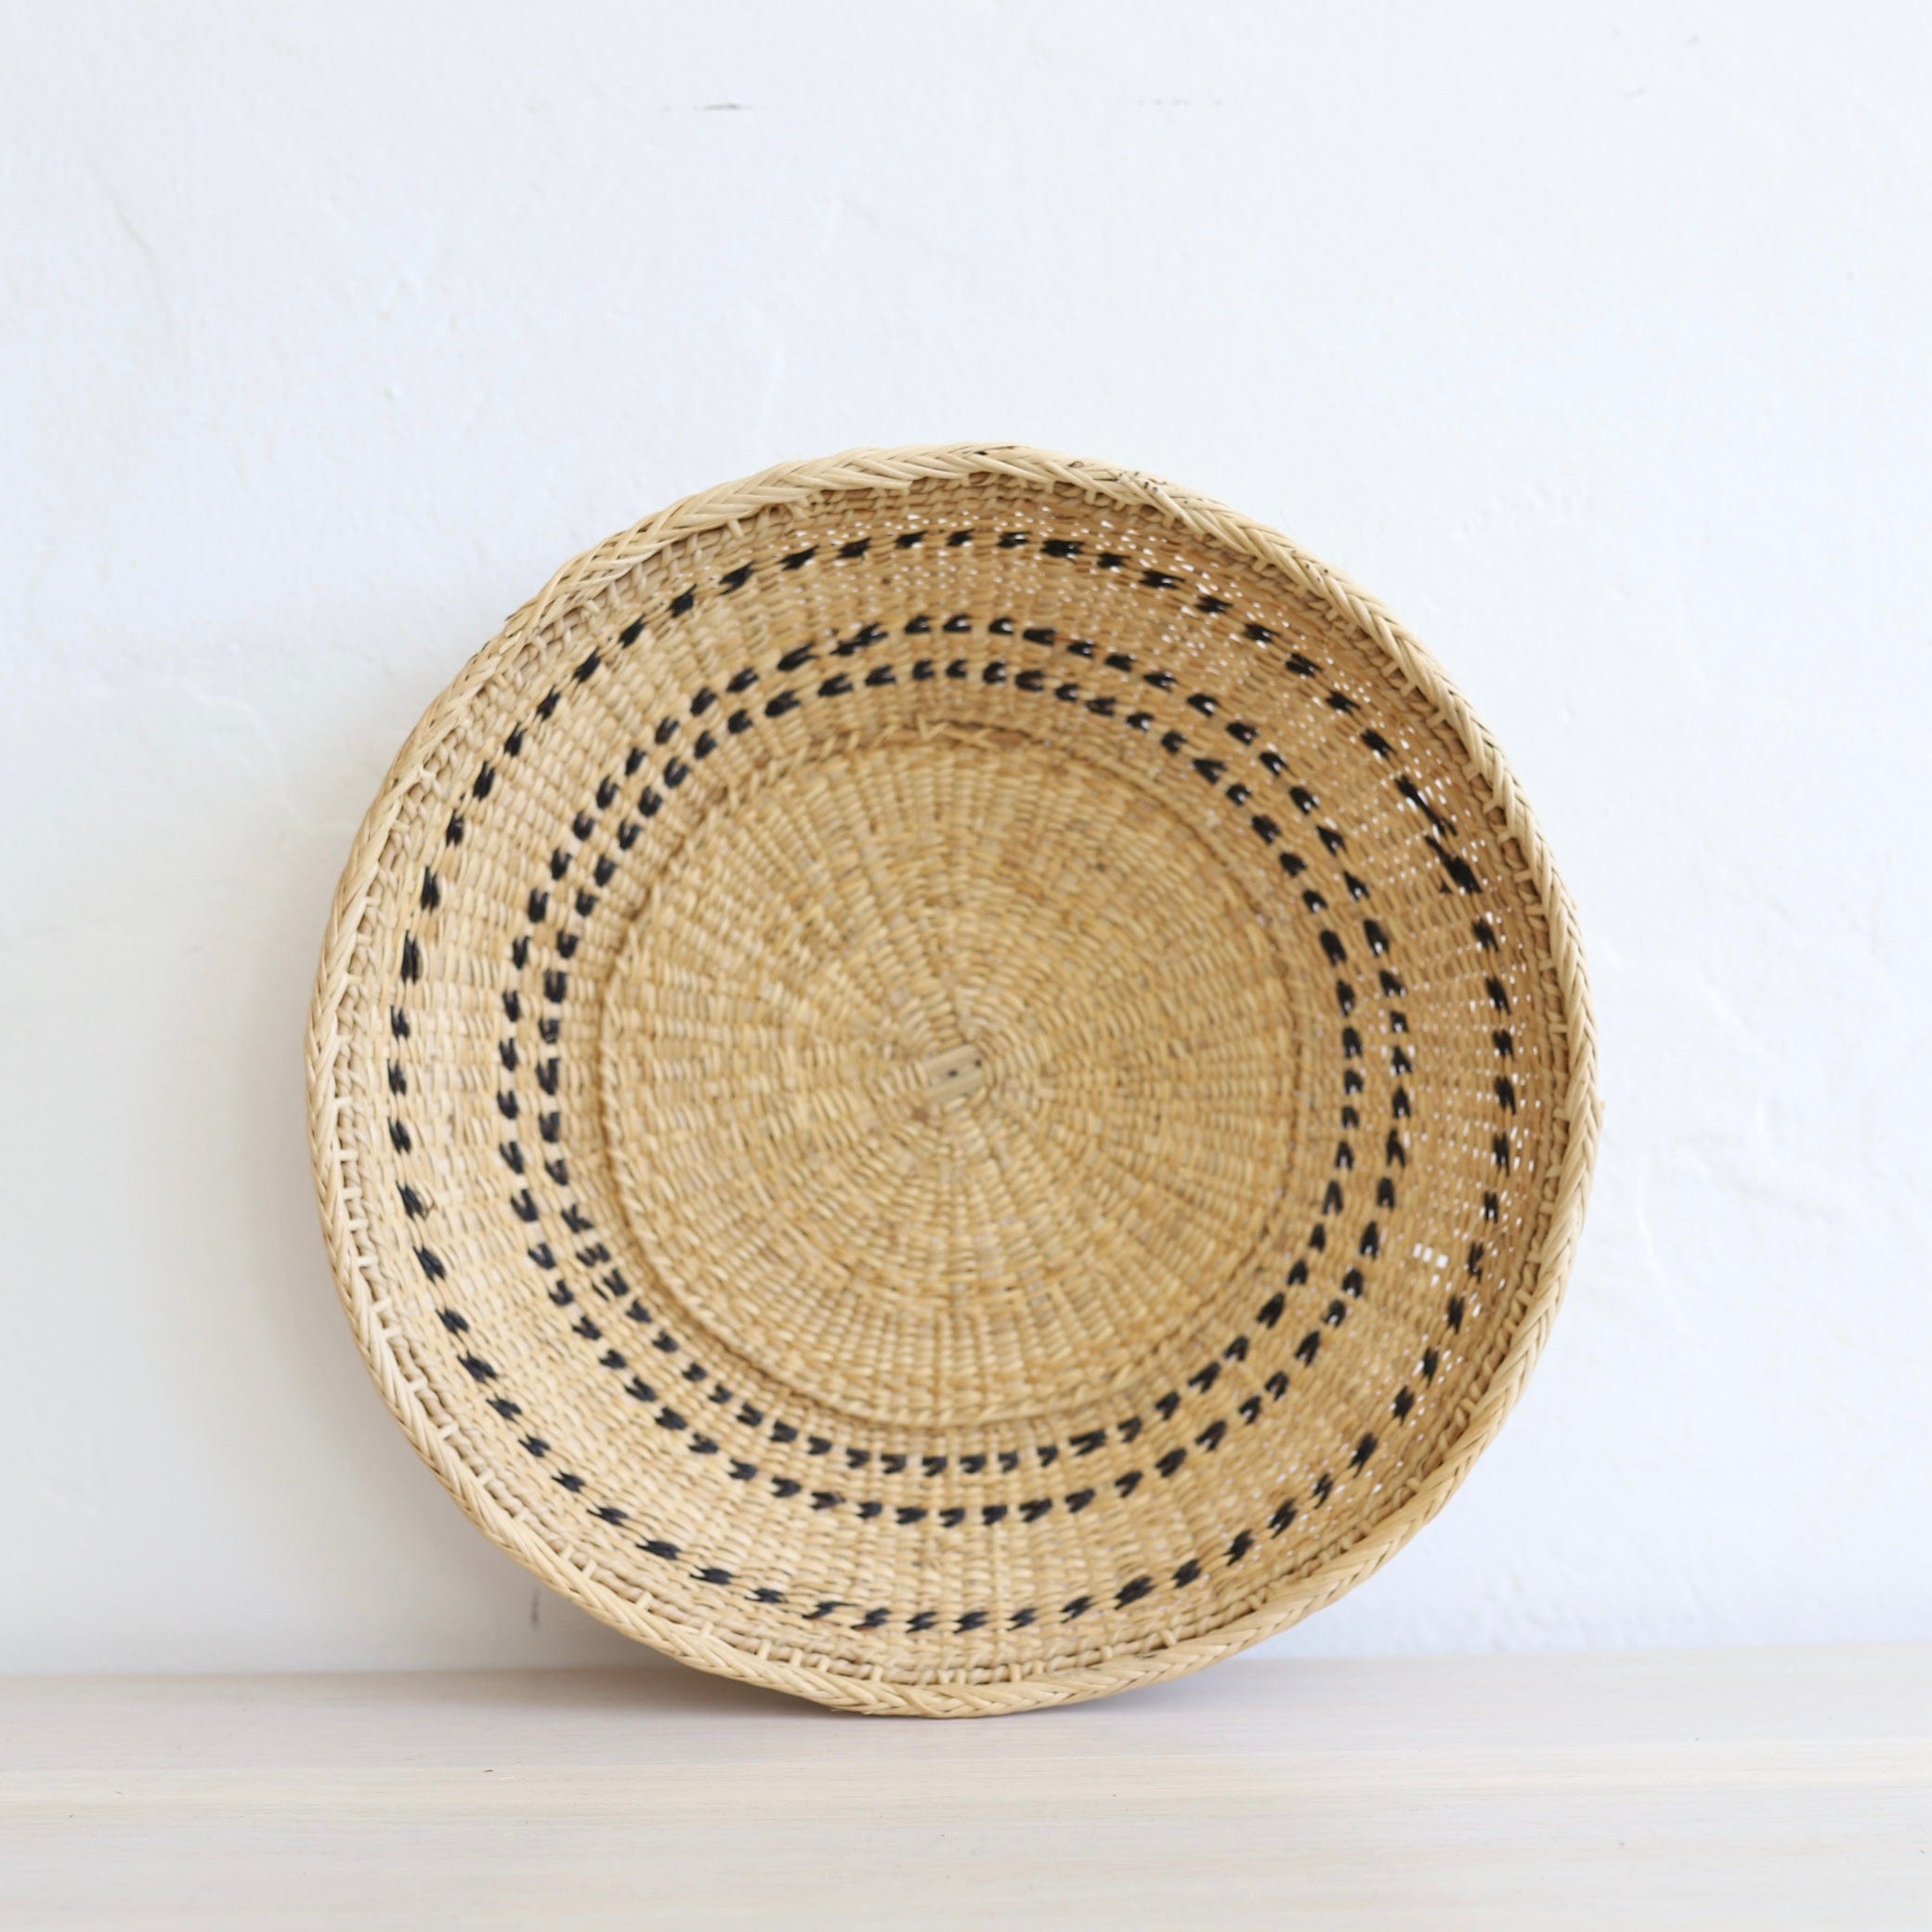 INCAUSA Decor Medium Xotehe Basket with Perisi Fungi by Yanomami People